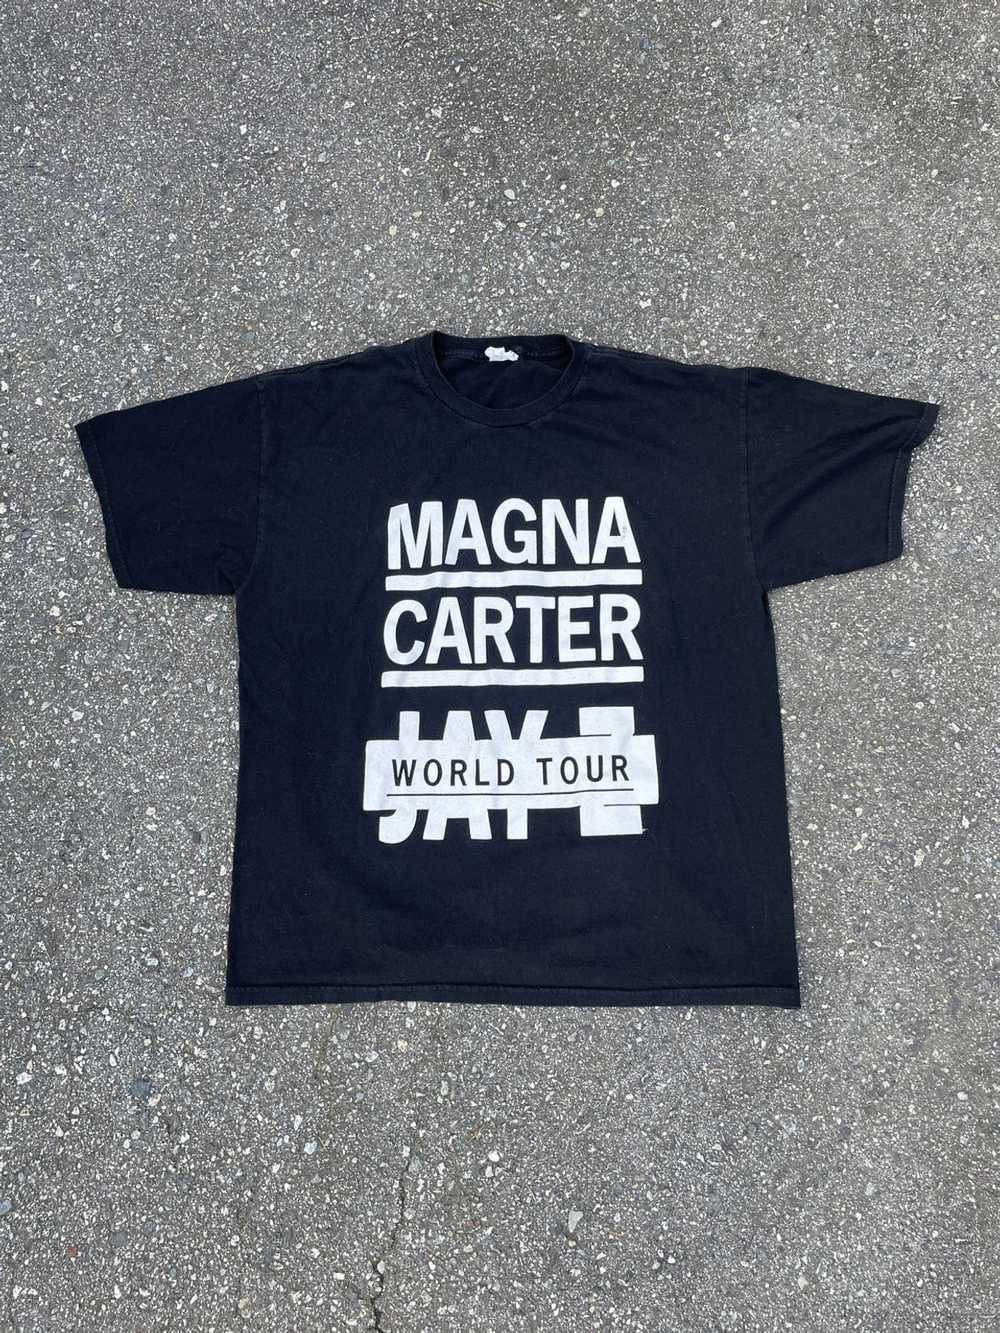 Rap Tees Jay-Z “Magna Carter” World Tour T-Shirt - image 2